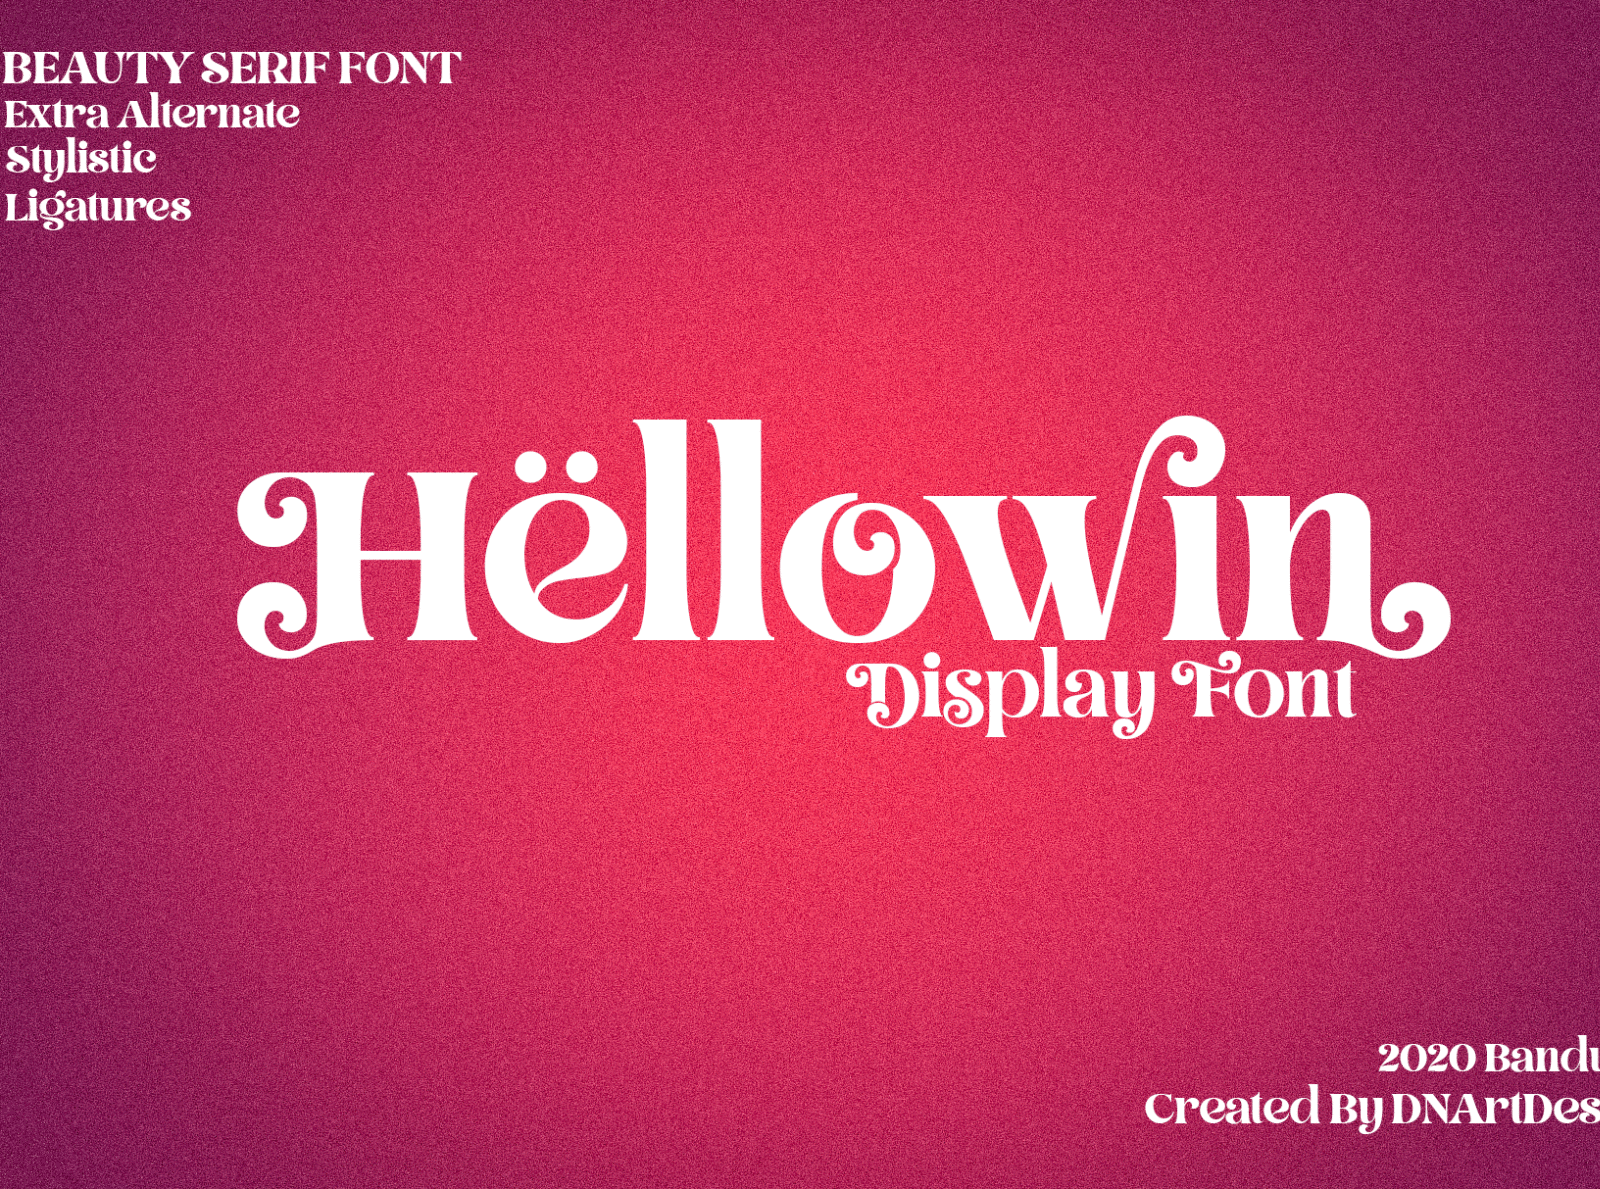 Hellowin Font chrismast font christmas contrast font decorative font logo typeface